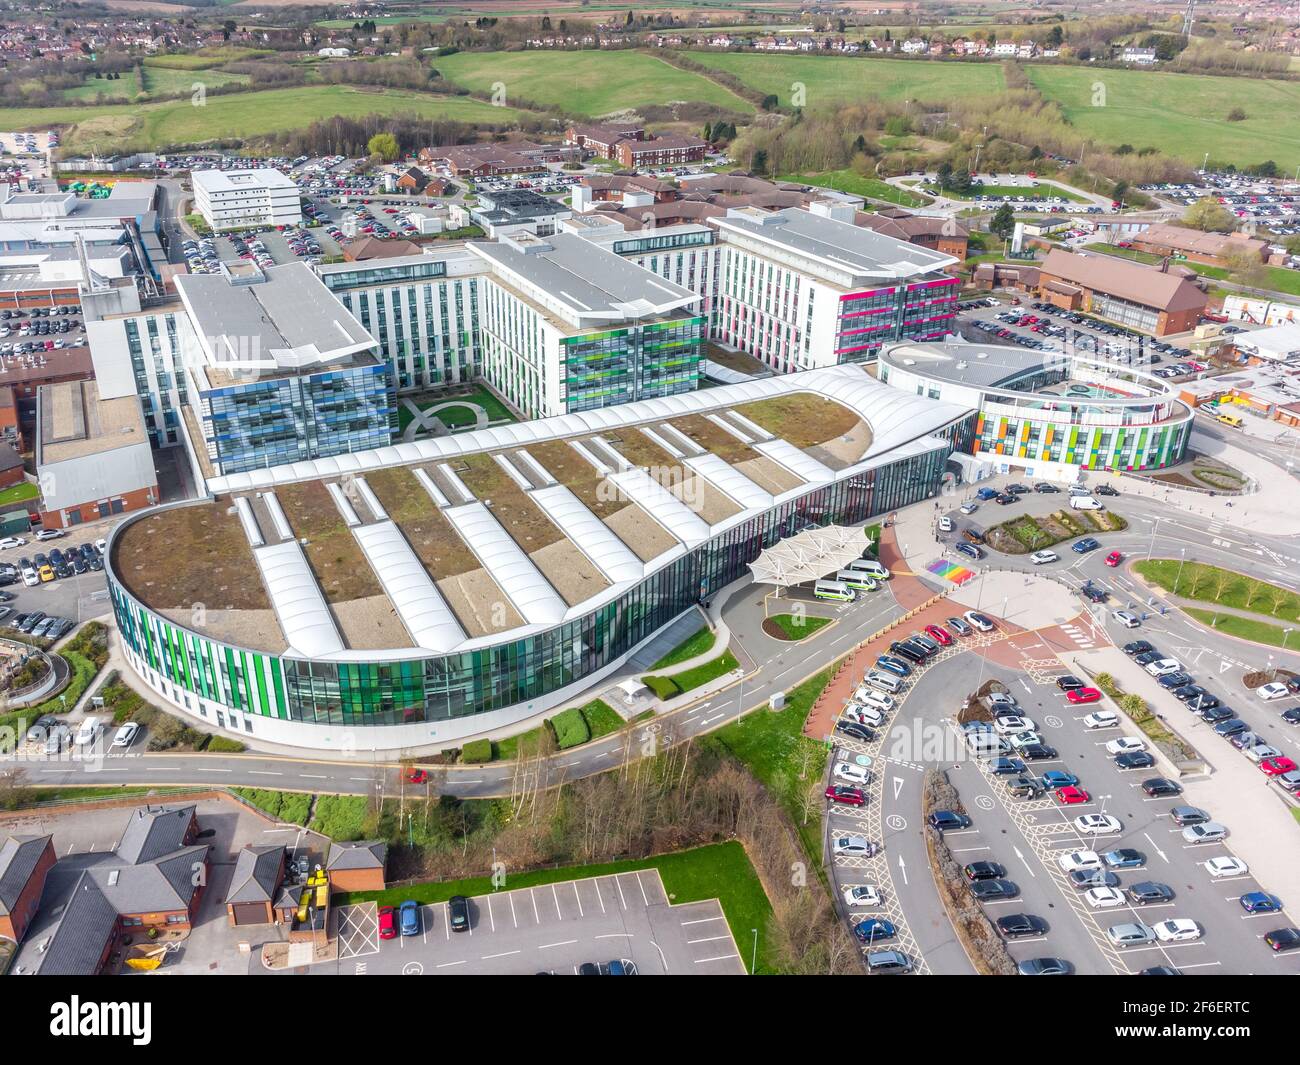 Kings Mill Hospital Mansfield Nottingham modernes, neues NHS-Gebäude, farbenfroh Architektur Luftaufnahme Drohne Fotografie Notfall medizinisches Zentrum Gesundheit Stockfoto